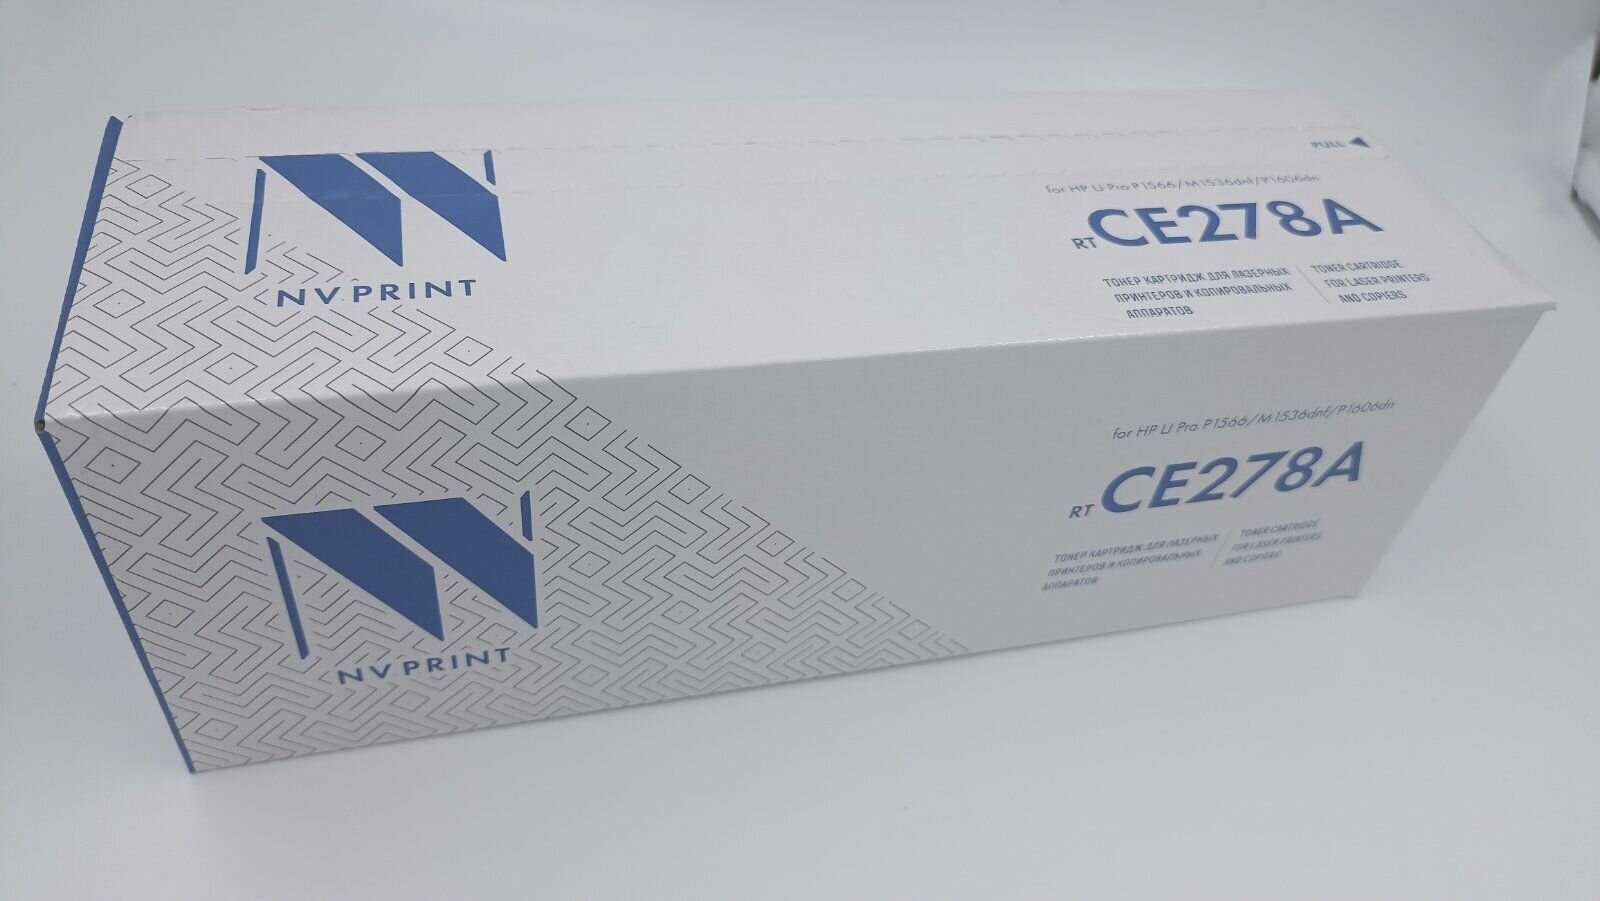 CE278A картридж, CE278A, картридж NV Print, черный, для лазерного принтера